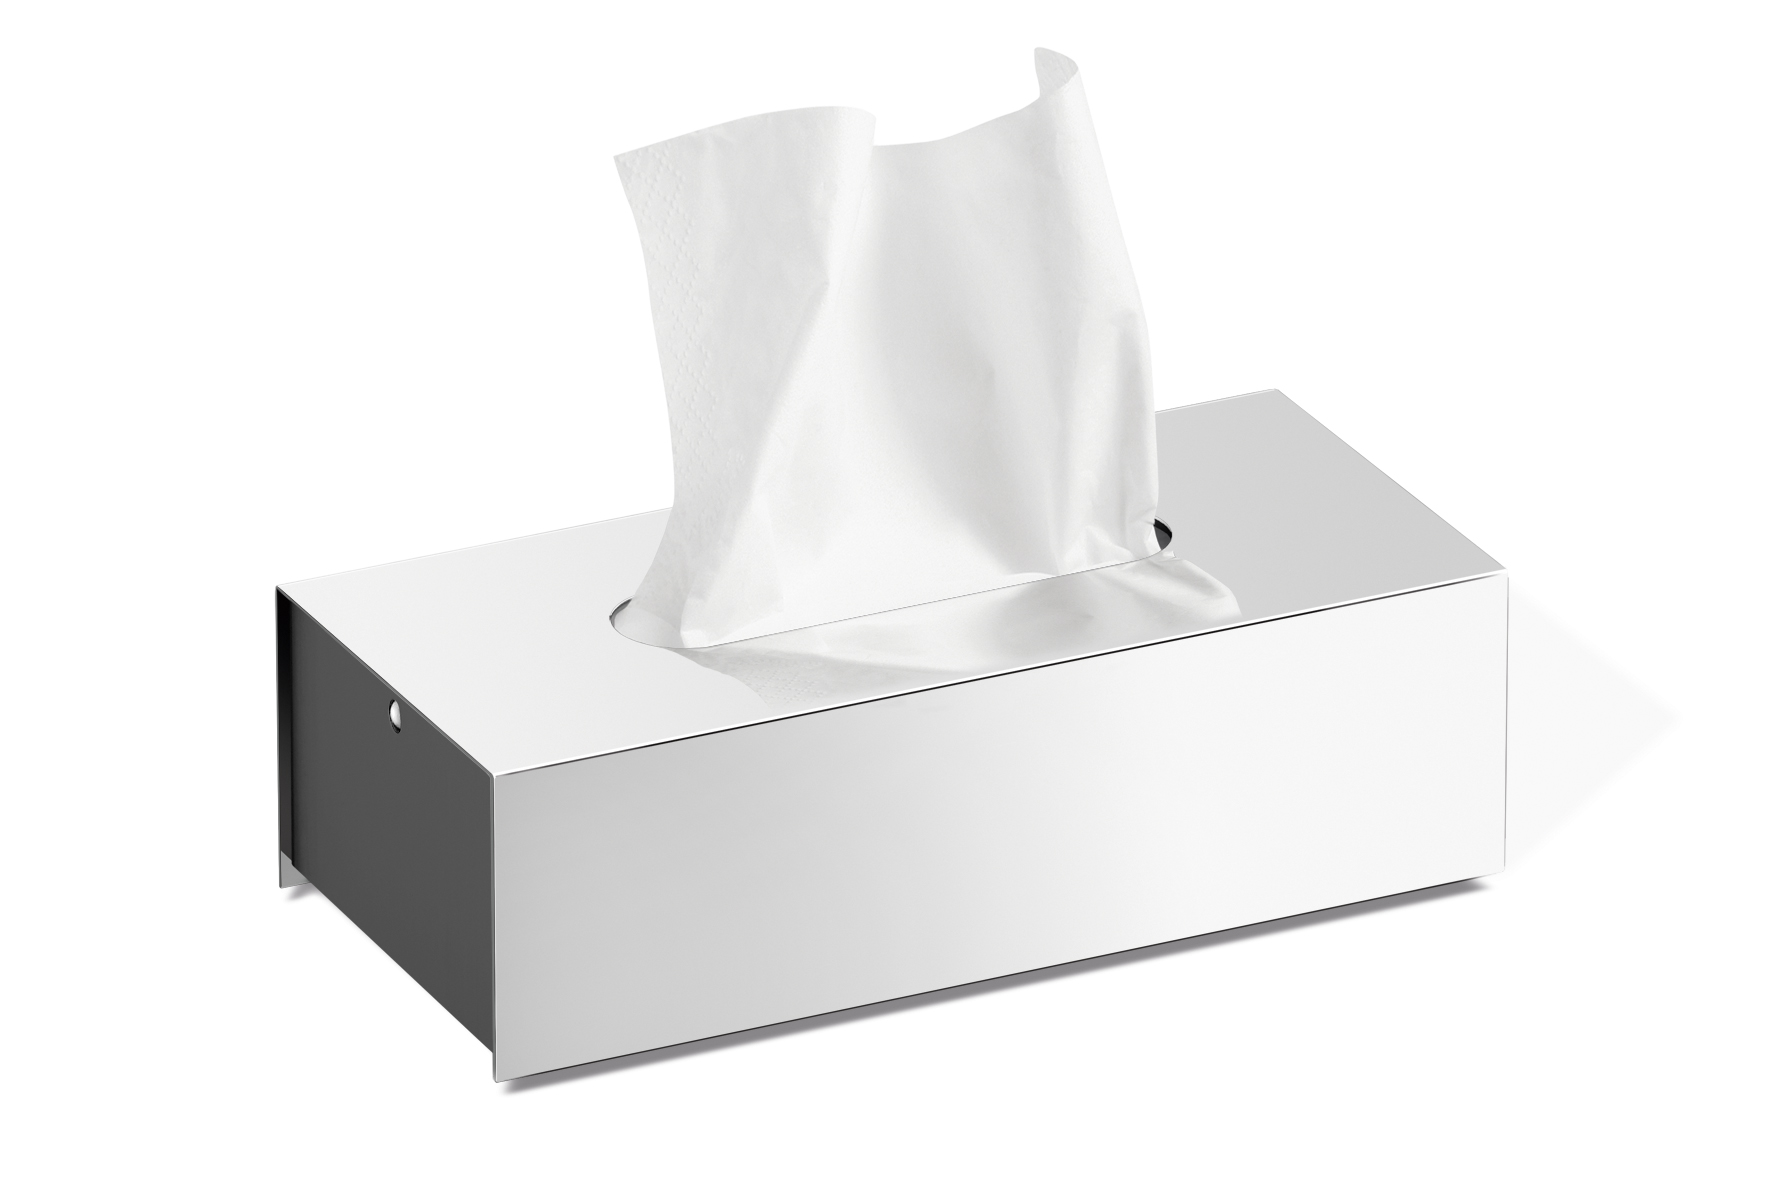 18/10 Bath Stainless Steel Kleenex Dispenser Tissue Box Cover Holder